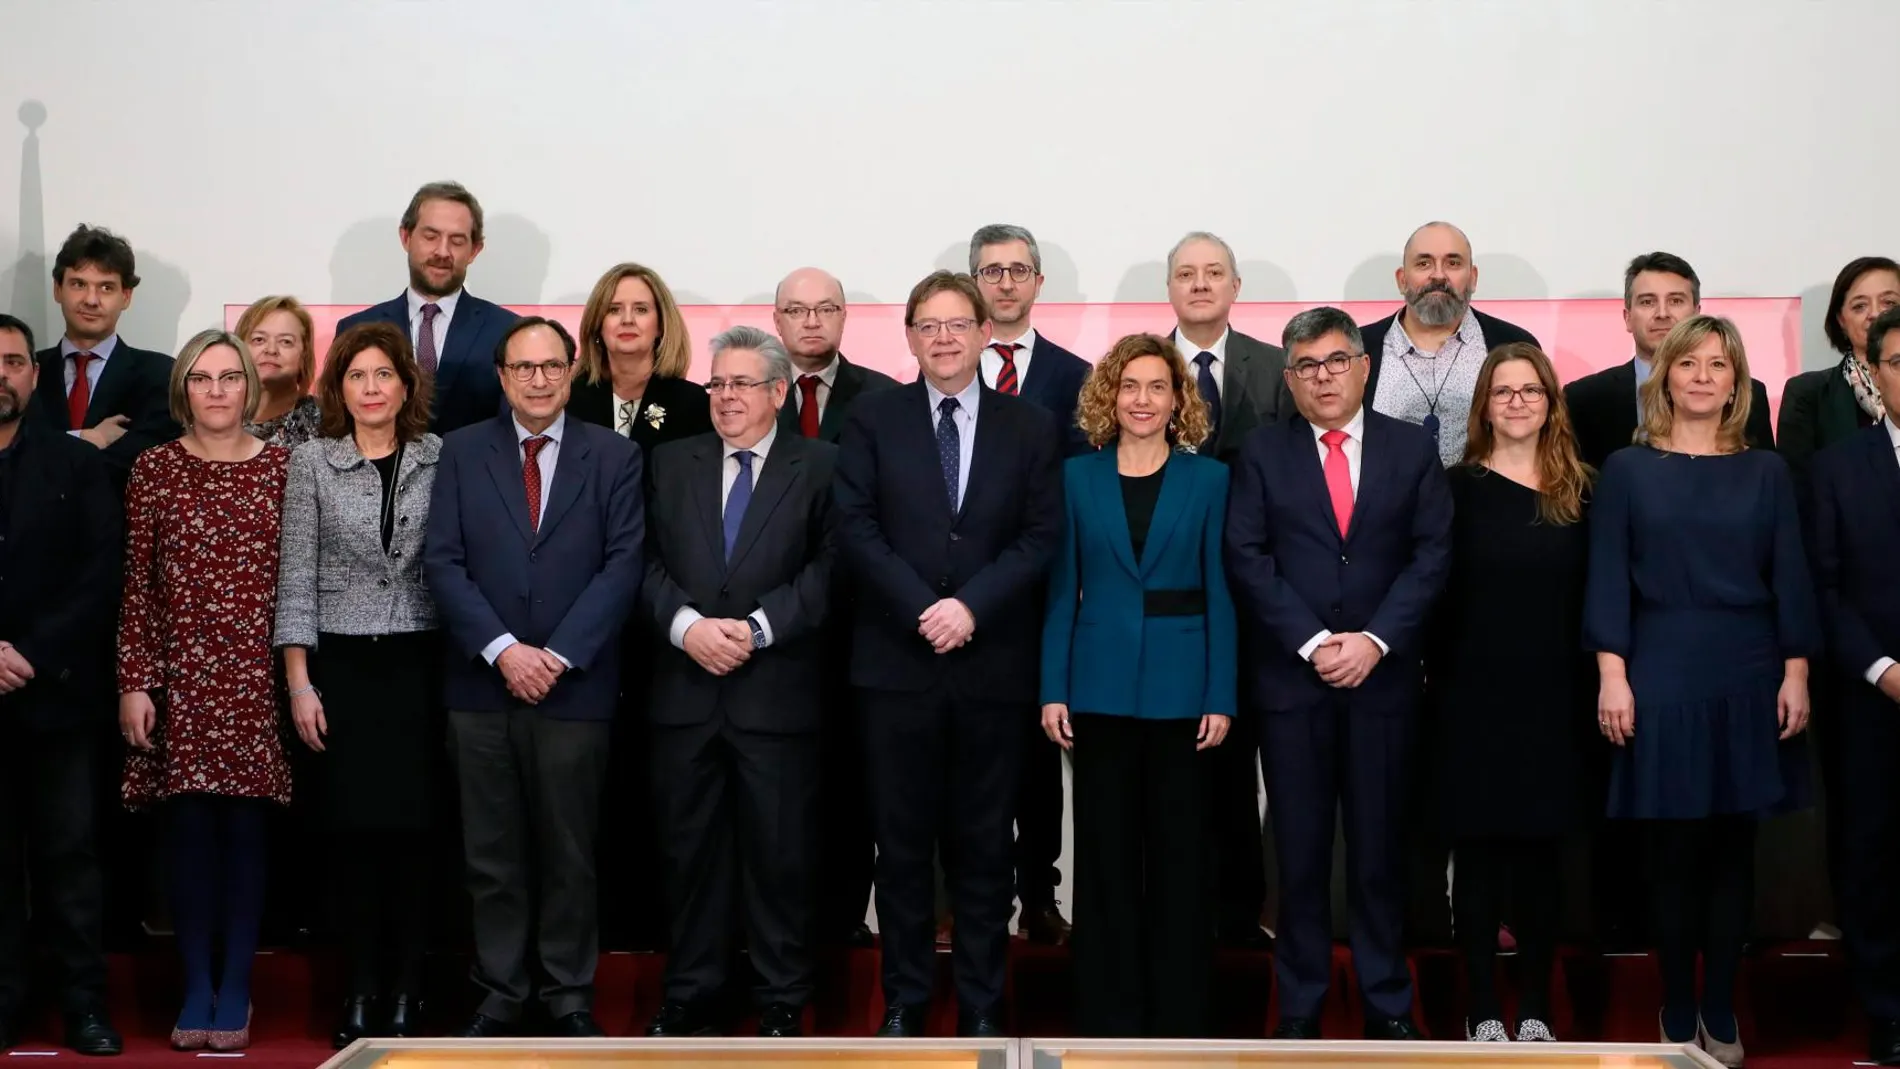 El presidente Puig y la ministra Batet dirigieron la comisión bilateral acompañados por consellers, secretarios de Estado y directores generales